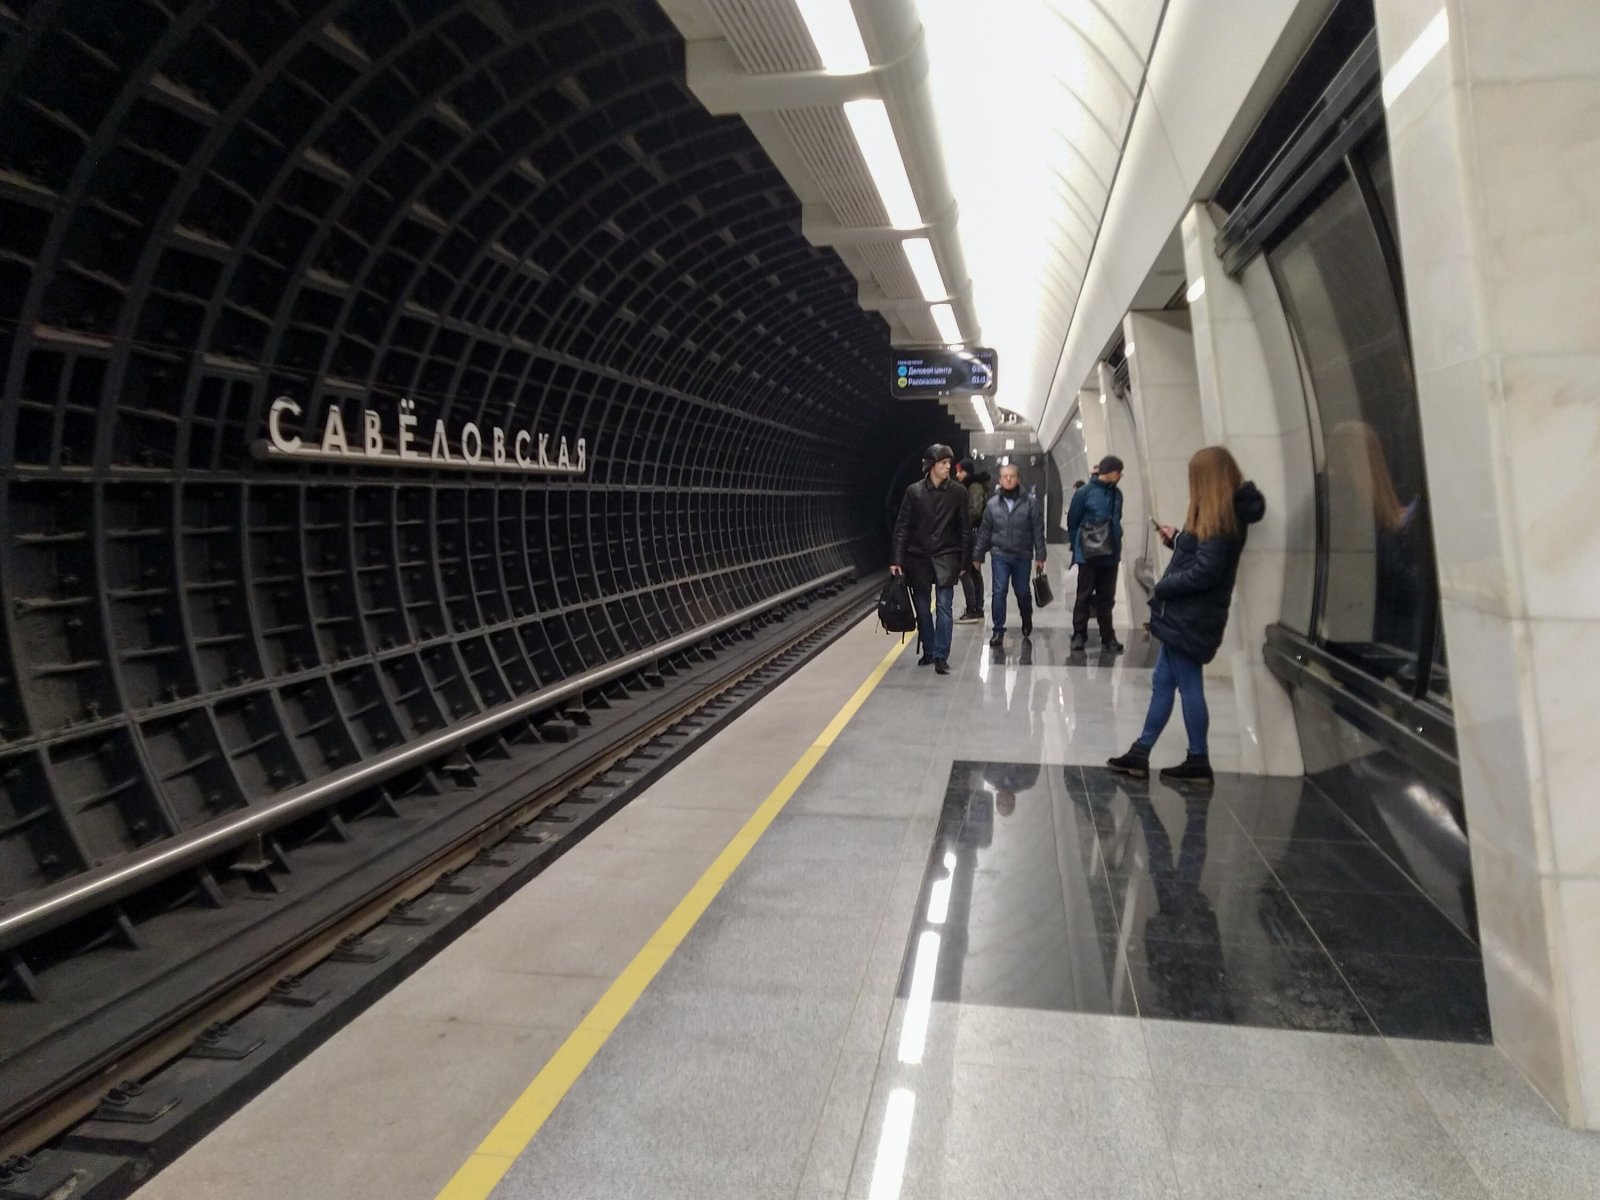 Участок БКЛ метро от «Савеловской» до «Петровского парка» временно закроют